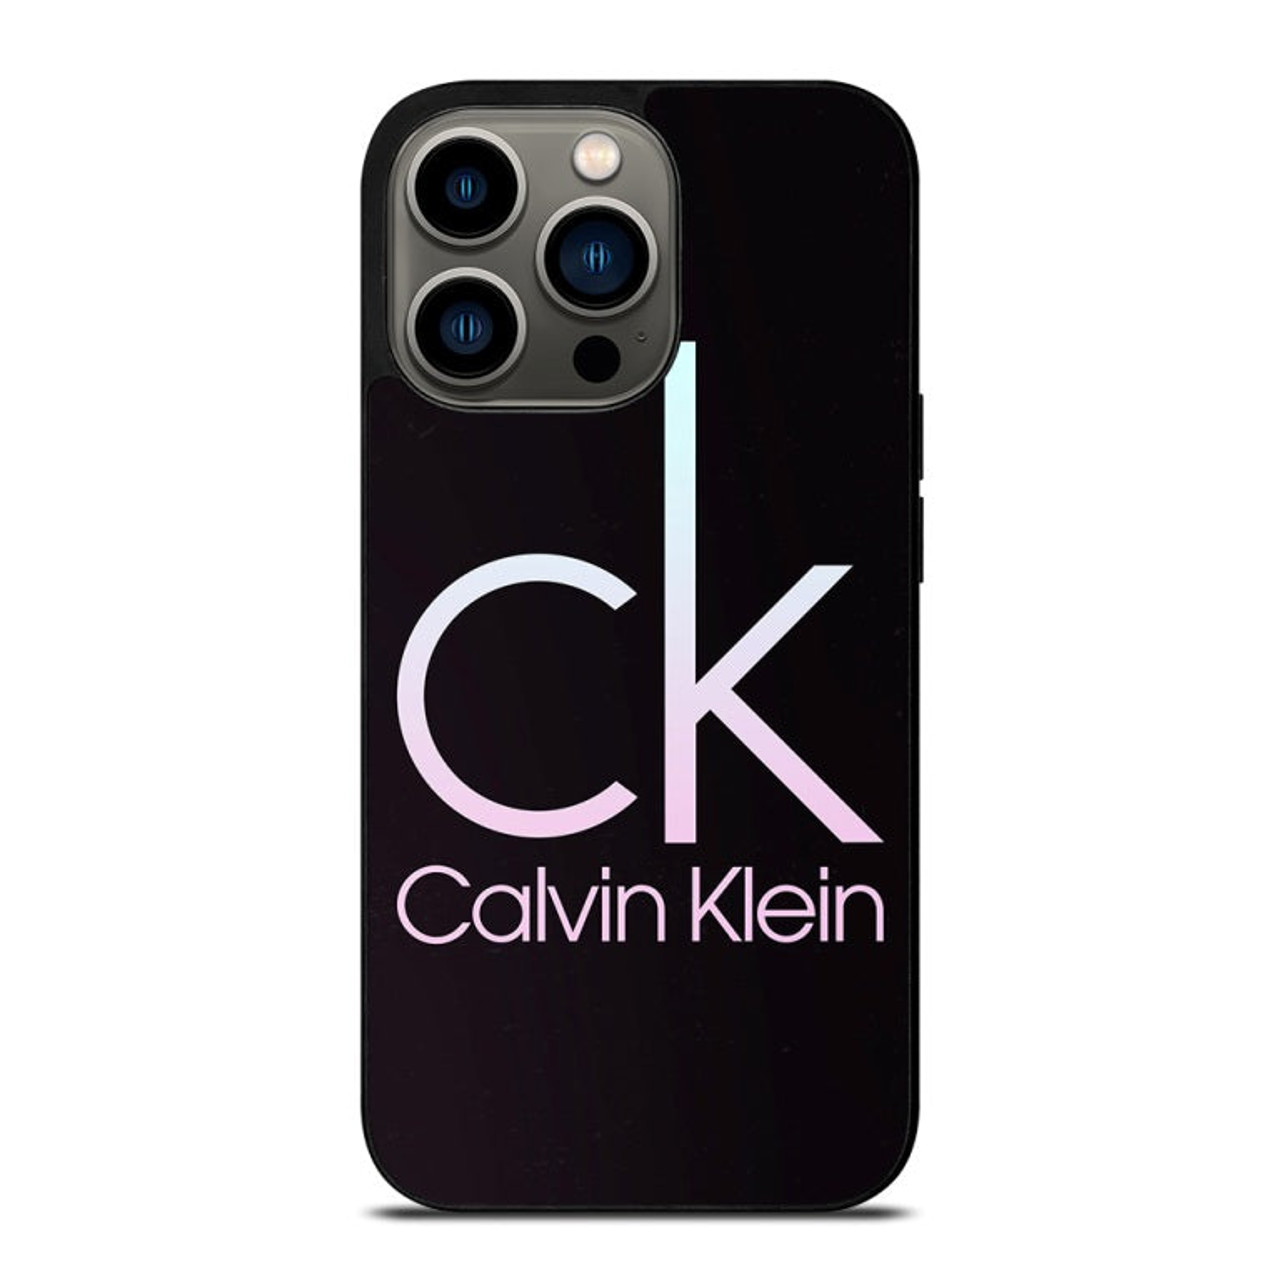 CALVIN KLEIN LOGO 2 iPhone 13 Pro Case Cover